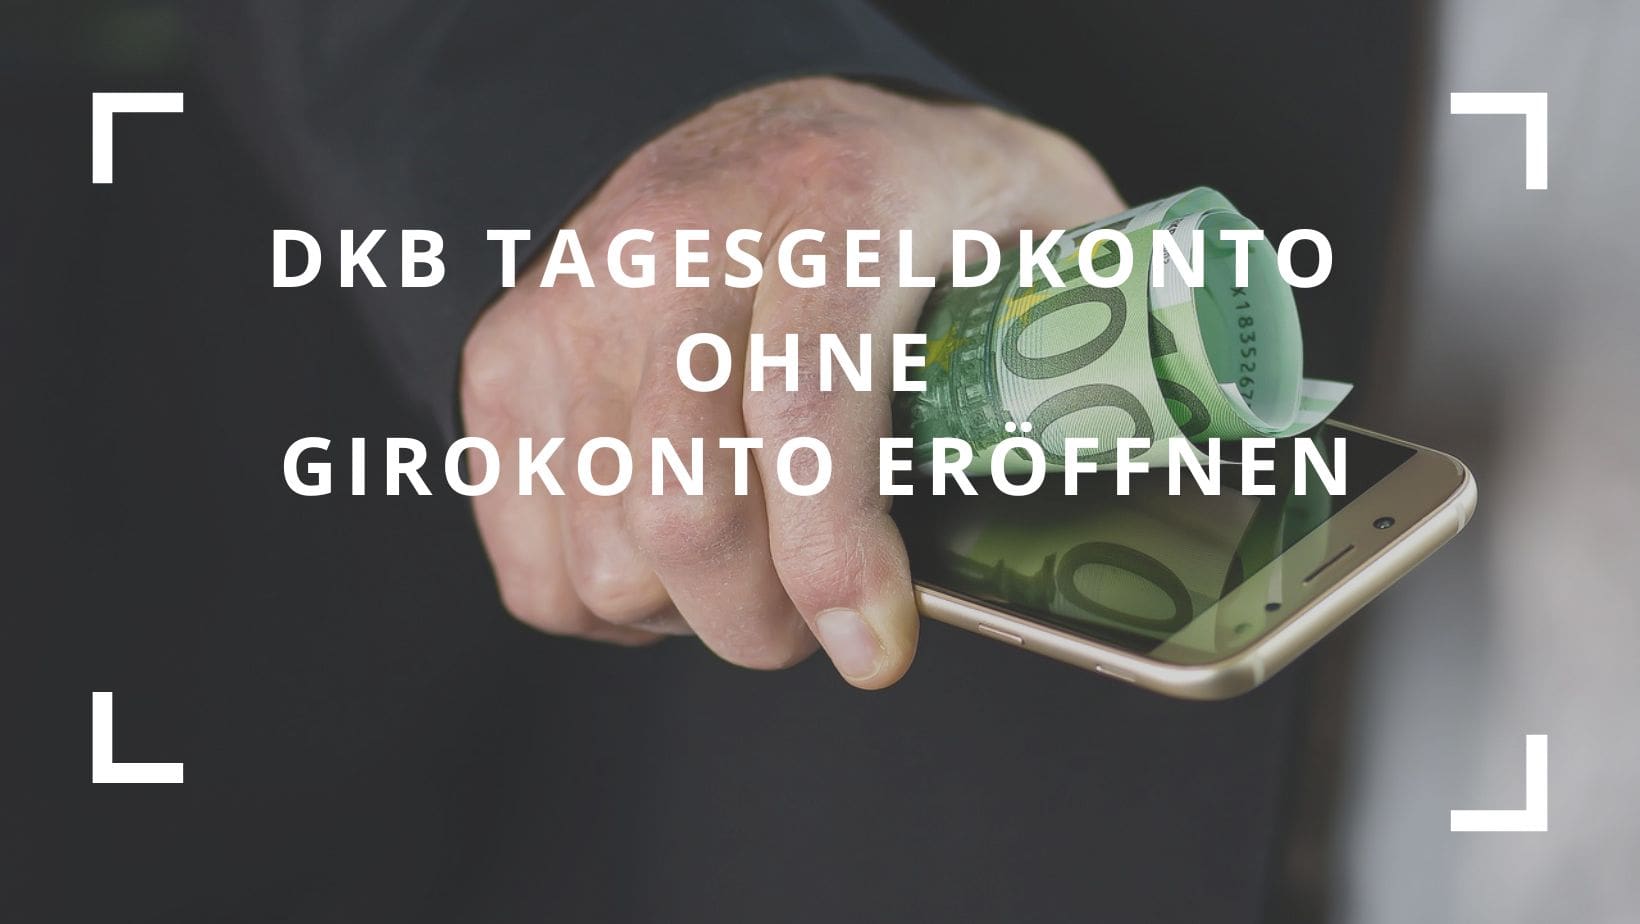 Titelbild zum Beitrag "DKB Tagesgeldkonto ohne Girokonto eröffnen - Ist das möglich?"